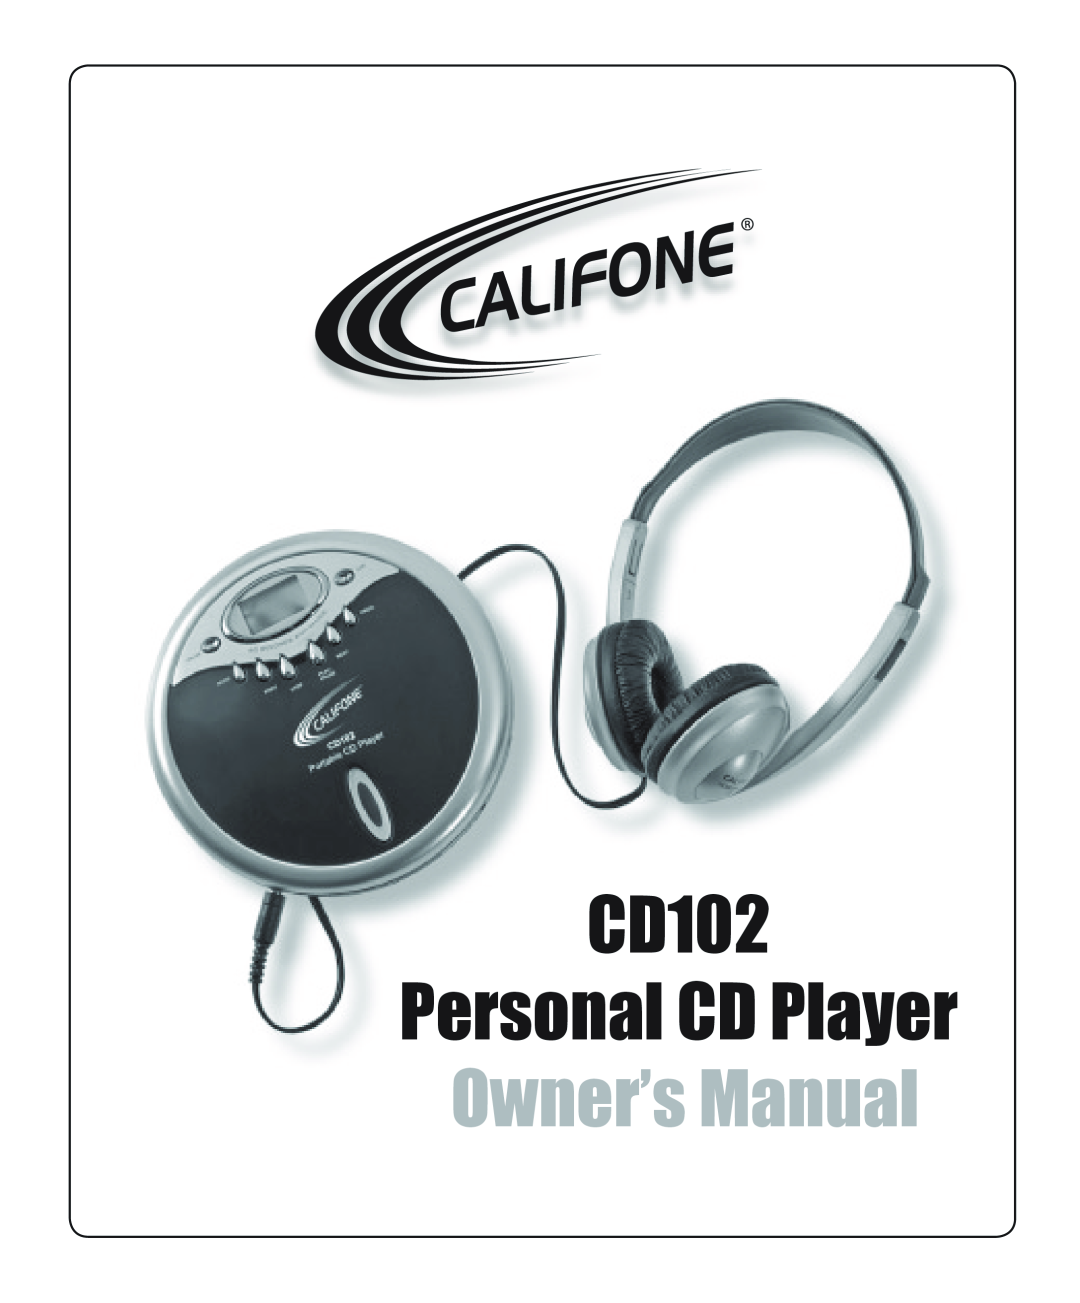 Califone owner manual CD102 Personal CD Player 